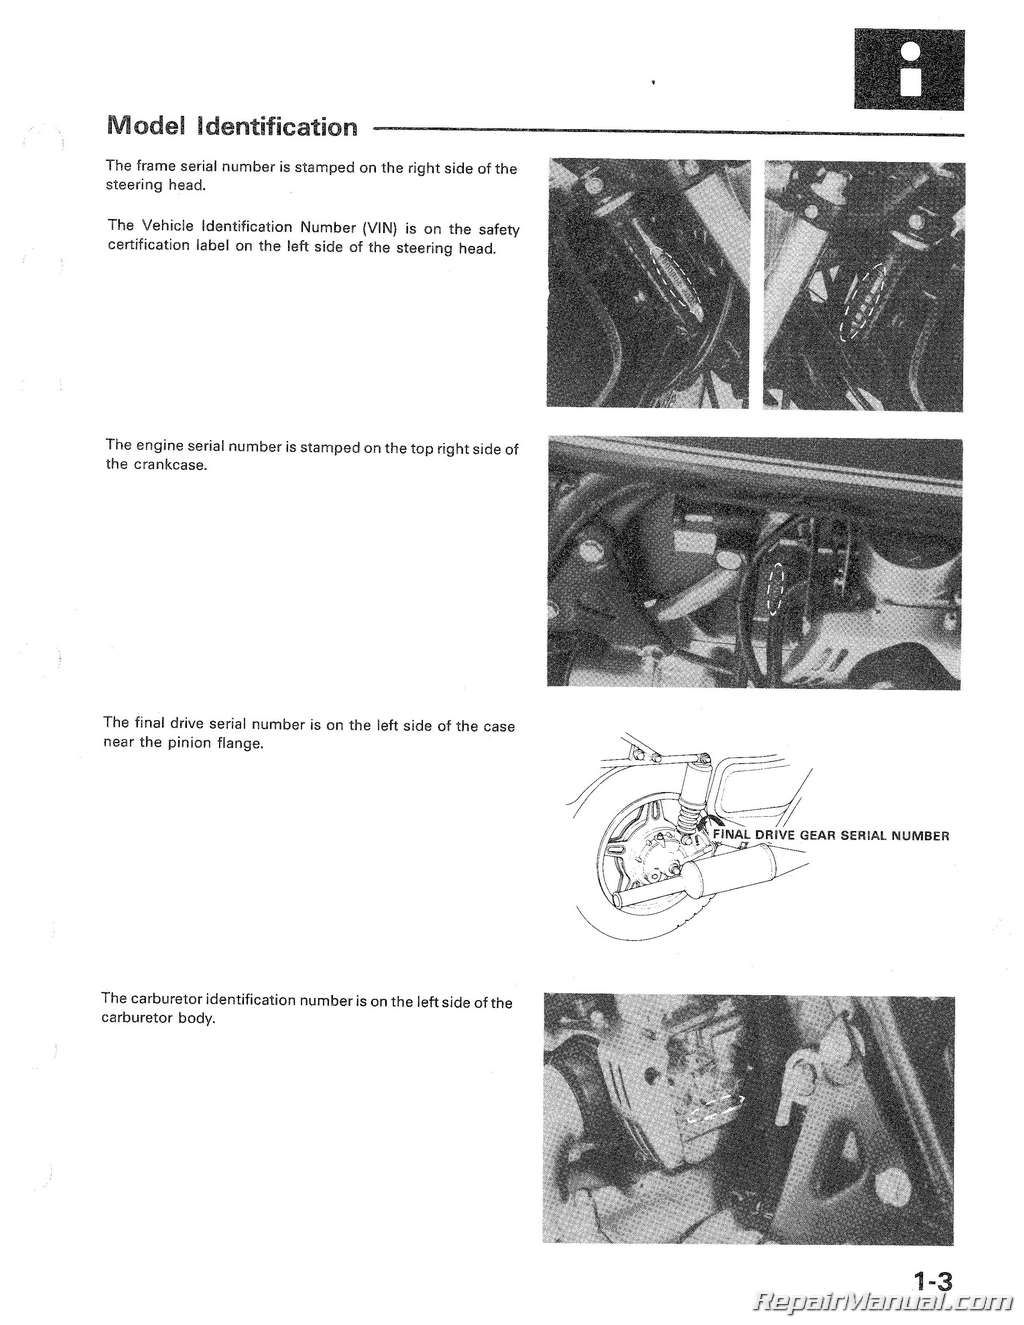 1980 Honda motorcycle repair manual #7